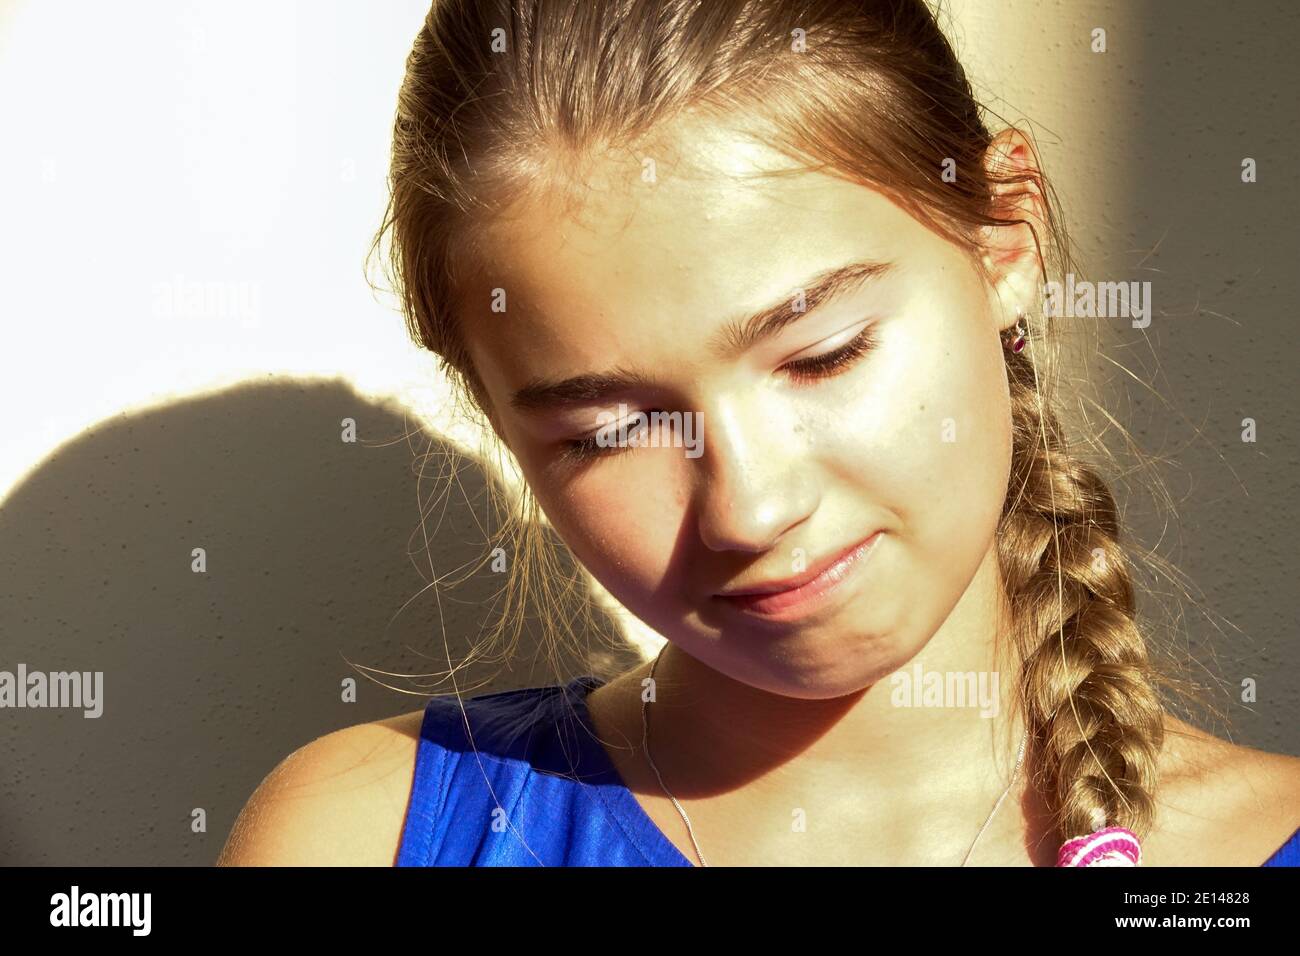 Niña adolescente con trenza de pelo Foto de stock